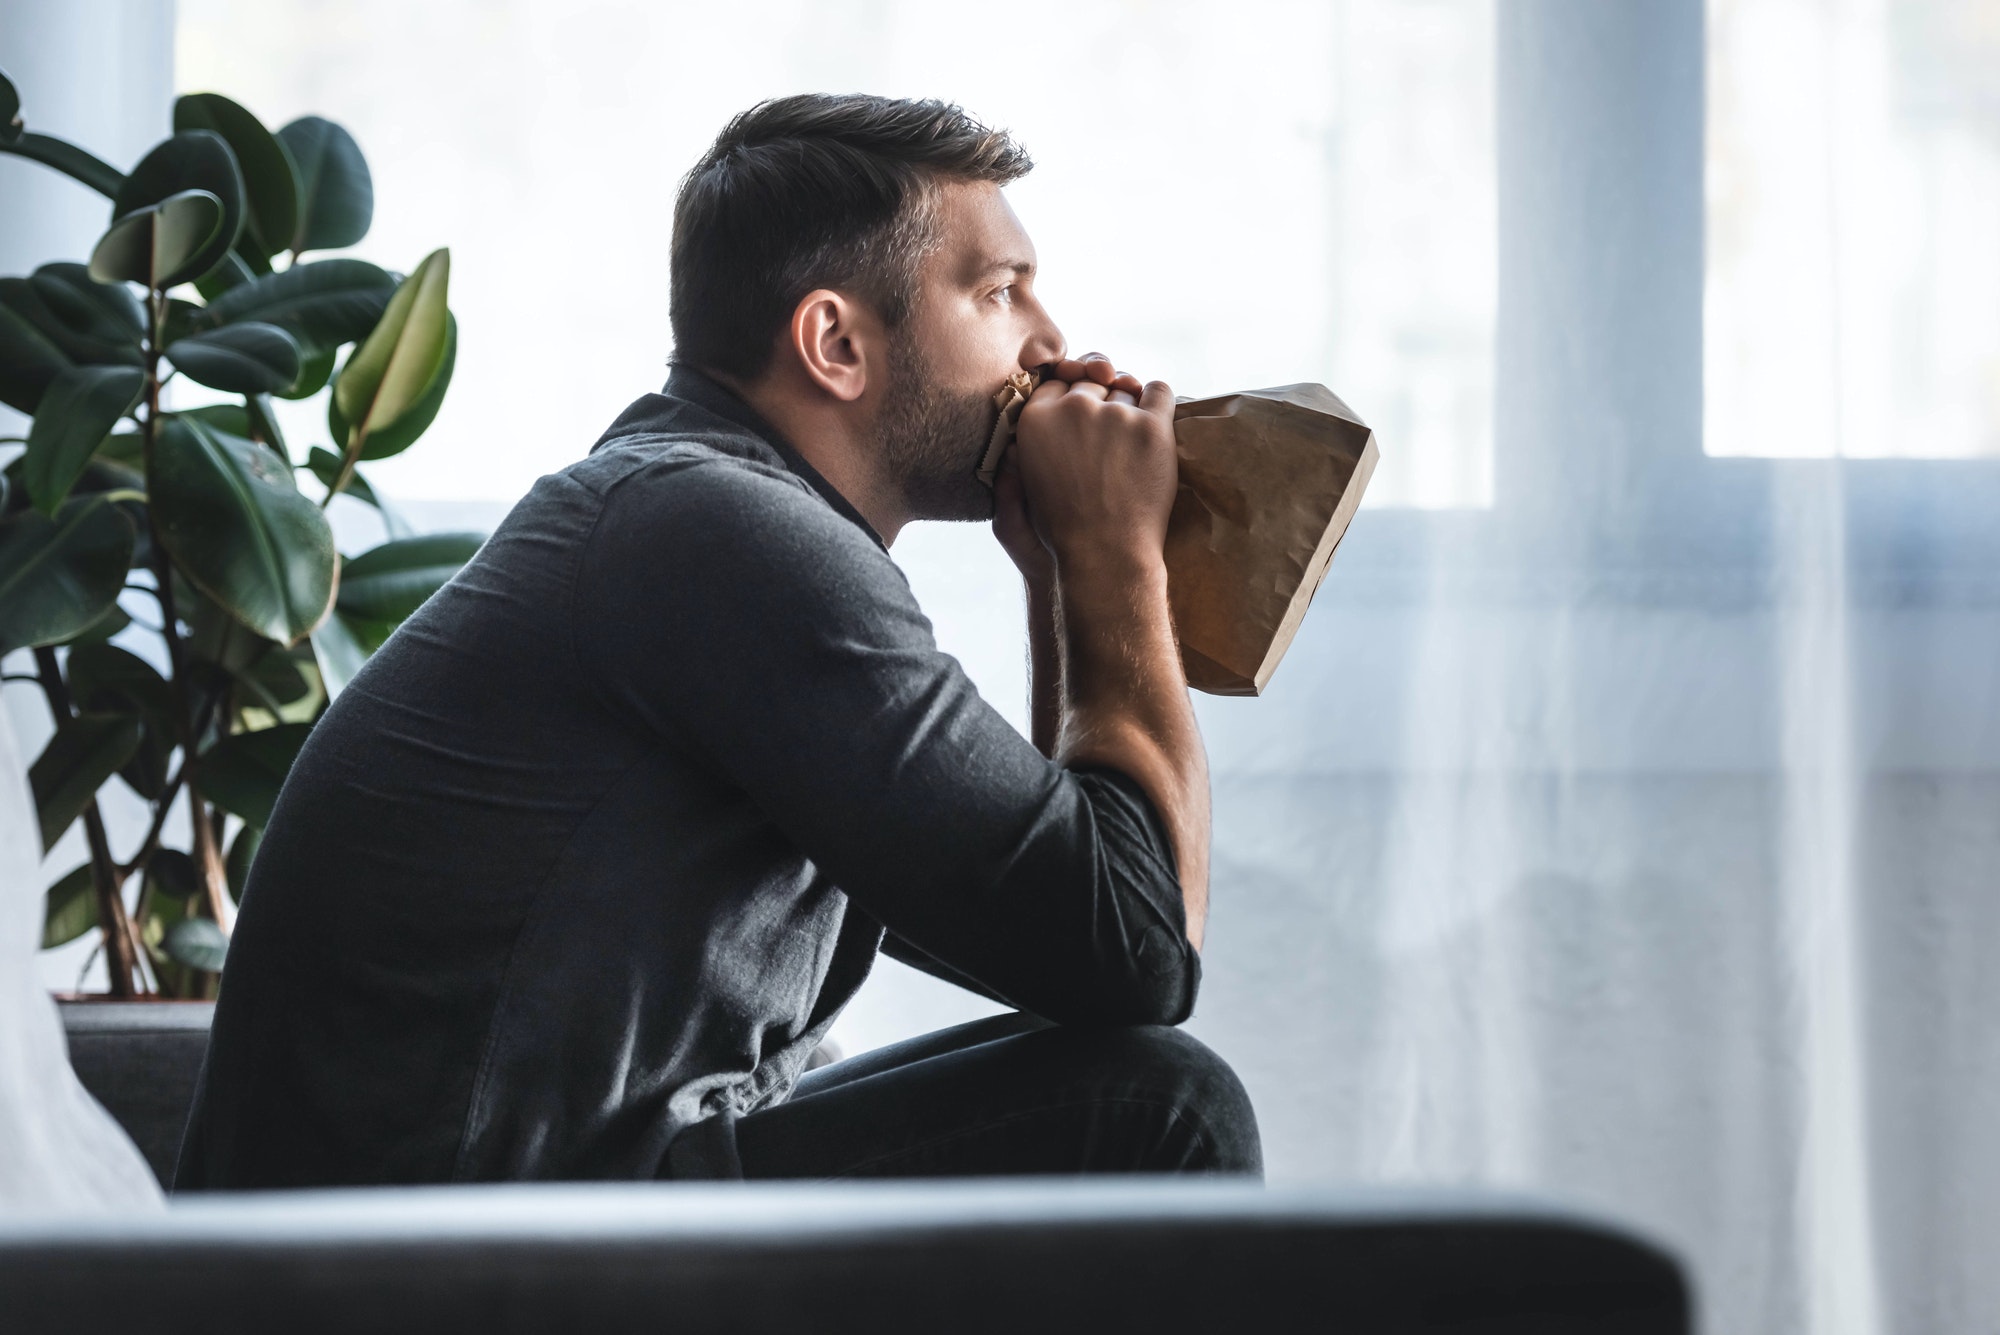 Stres a bolest na hrudi – jak se jich zbavit?